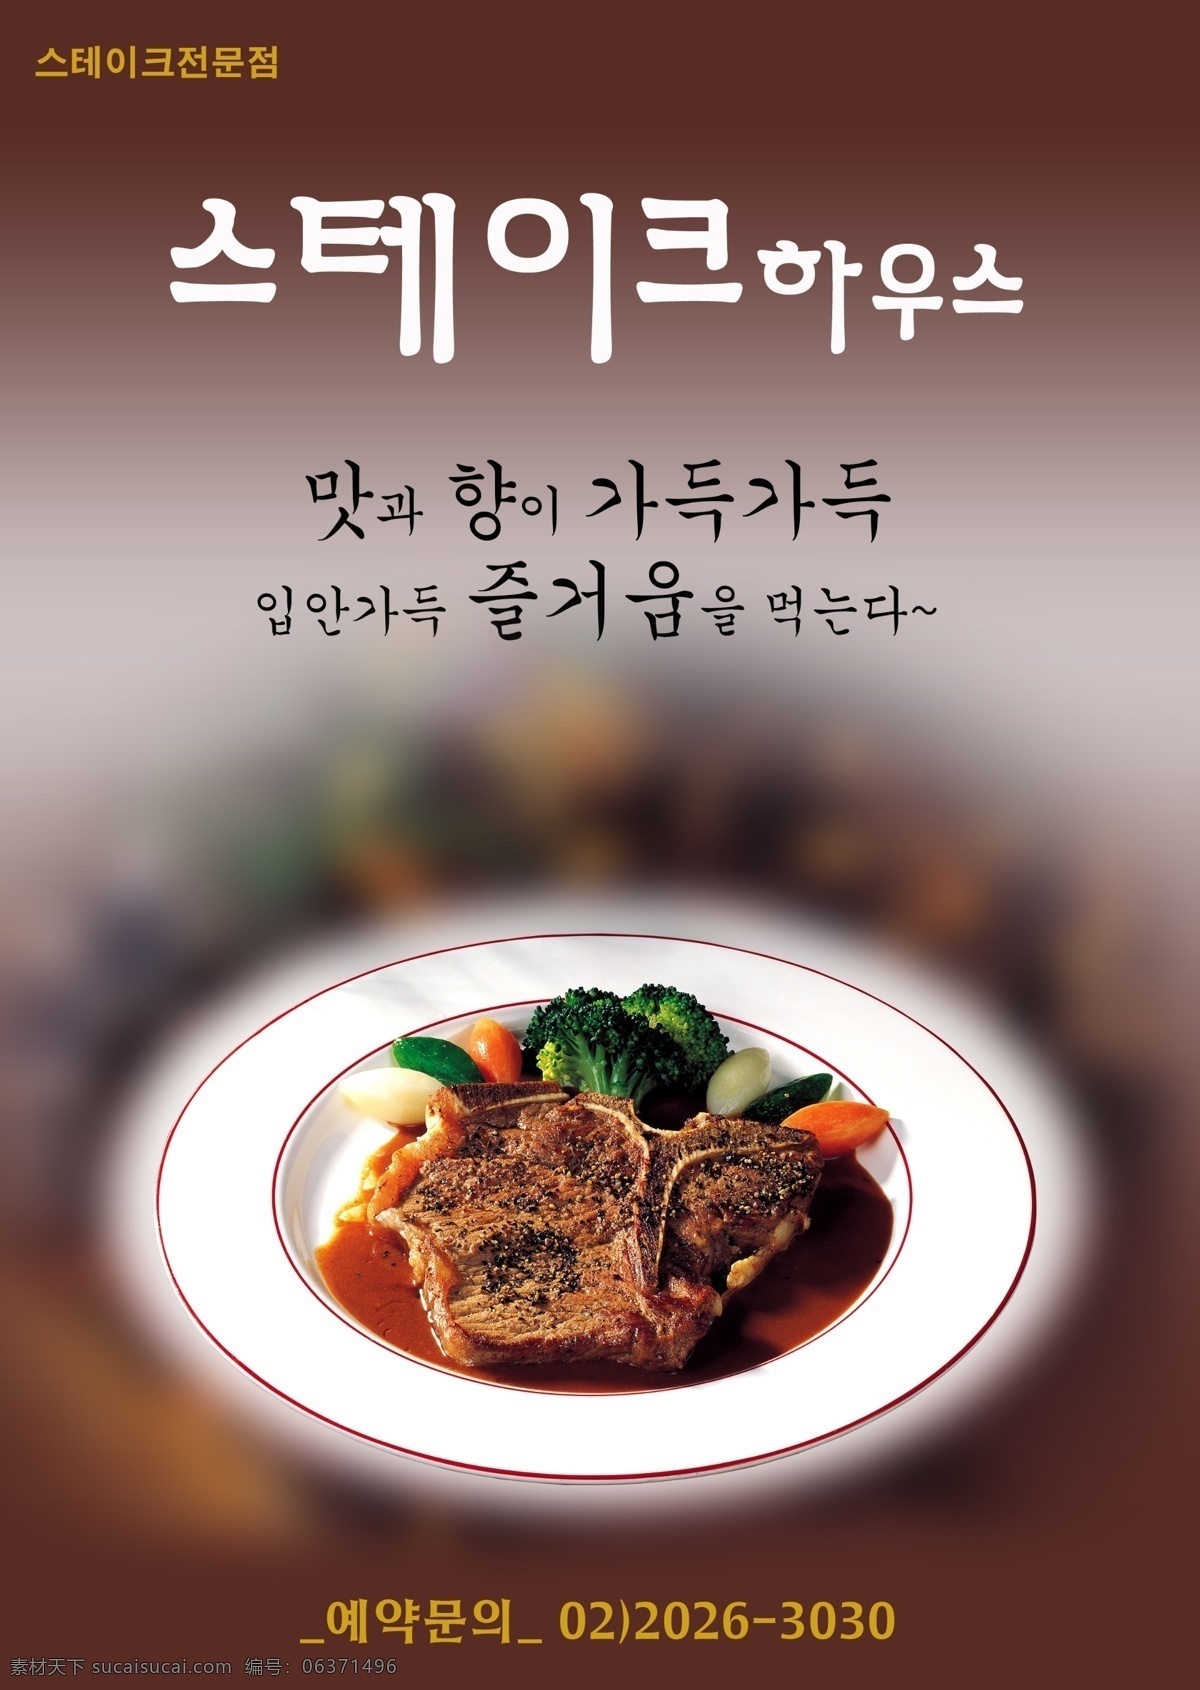 盘子 内 美食 psd素材 韩国料理 美食海报 食物 其他海报设计